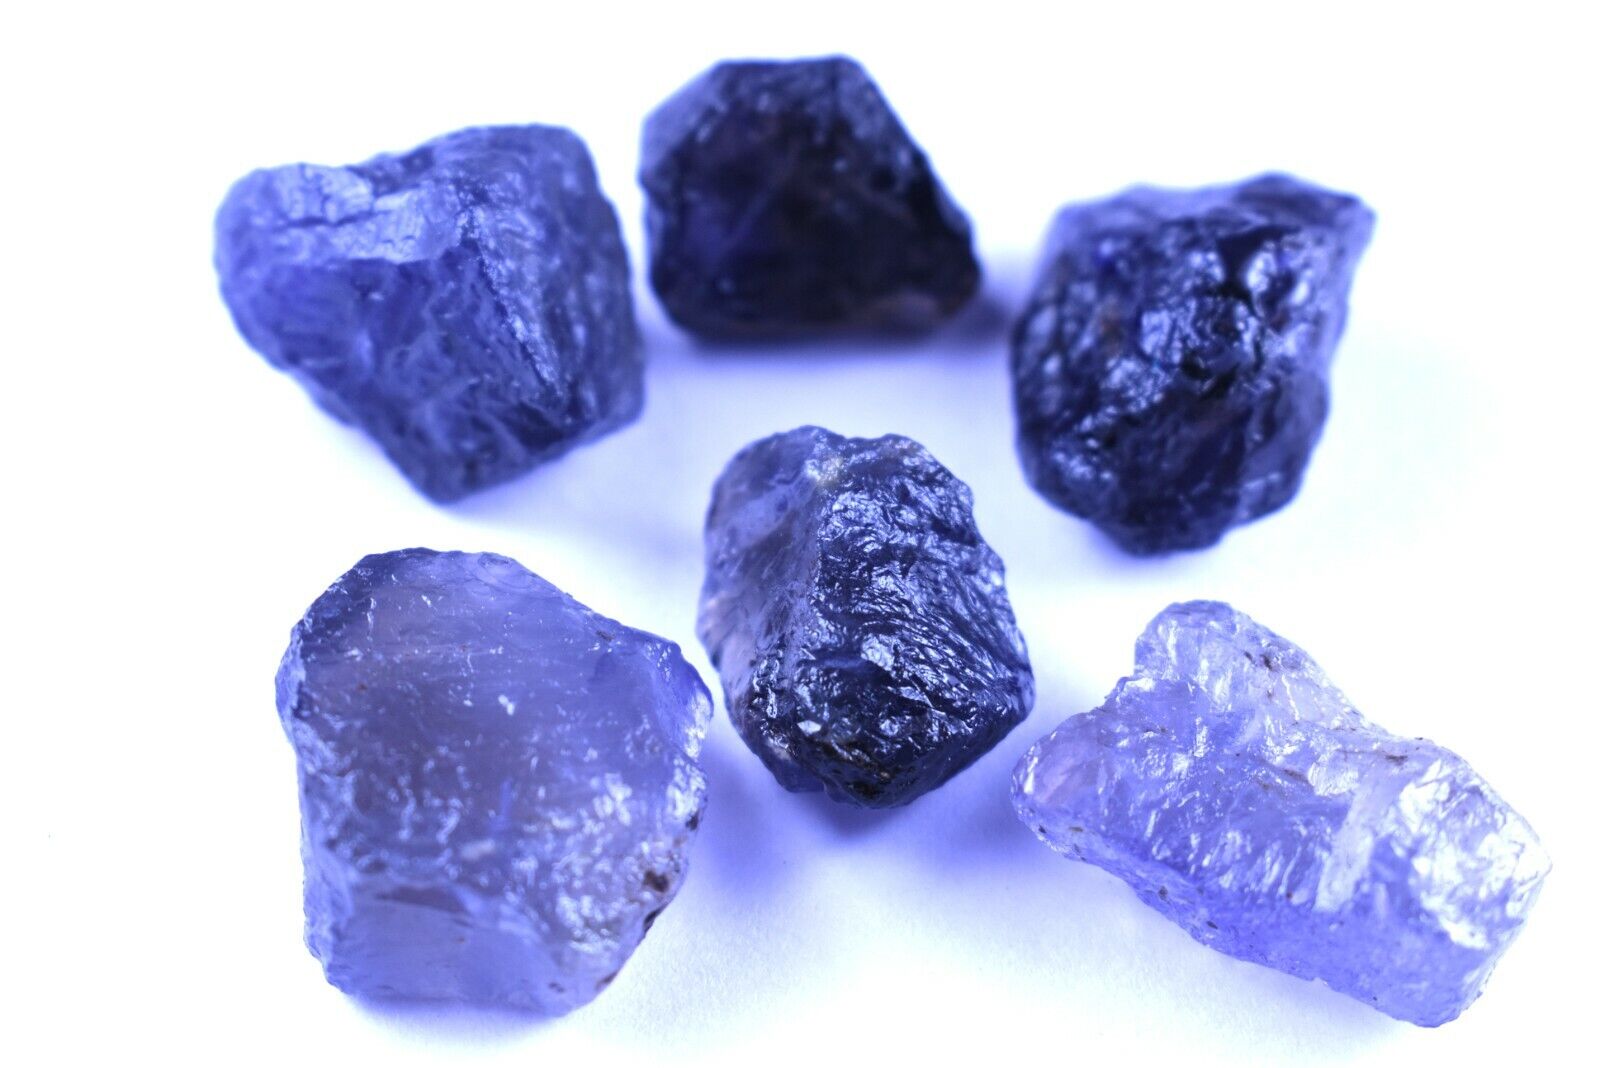 100% Natural Blue Iolite 189 Carat Rock Loose Gemstone Rough Crystal Healing 